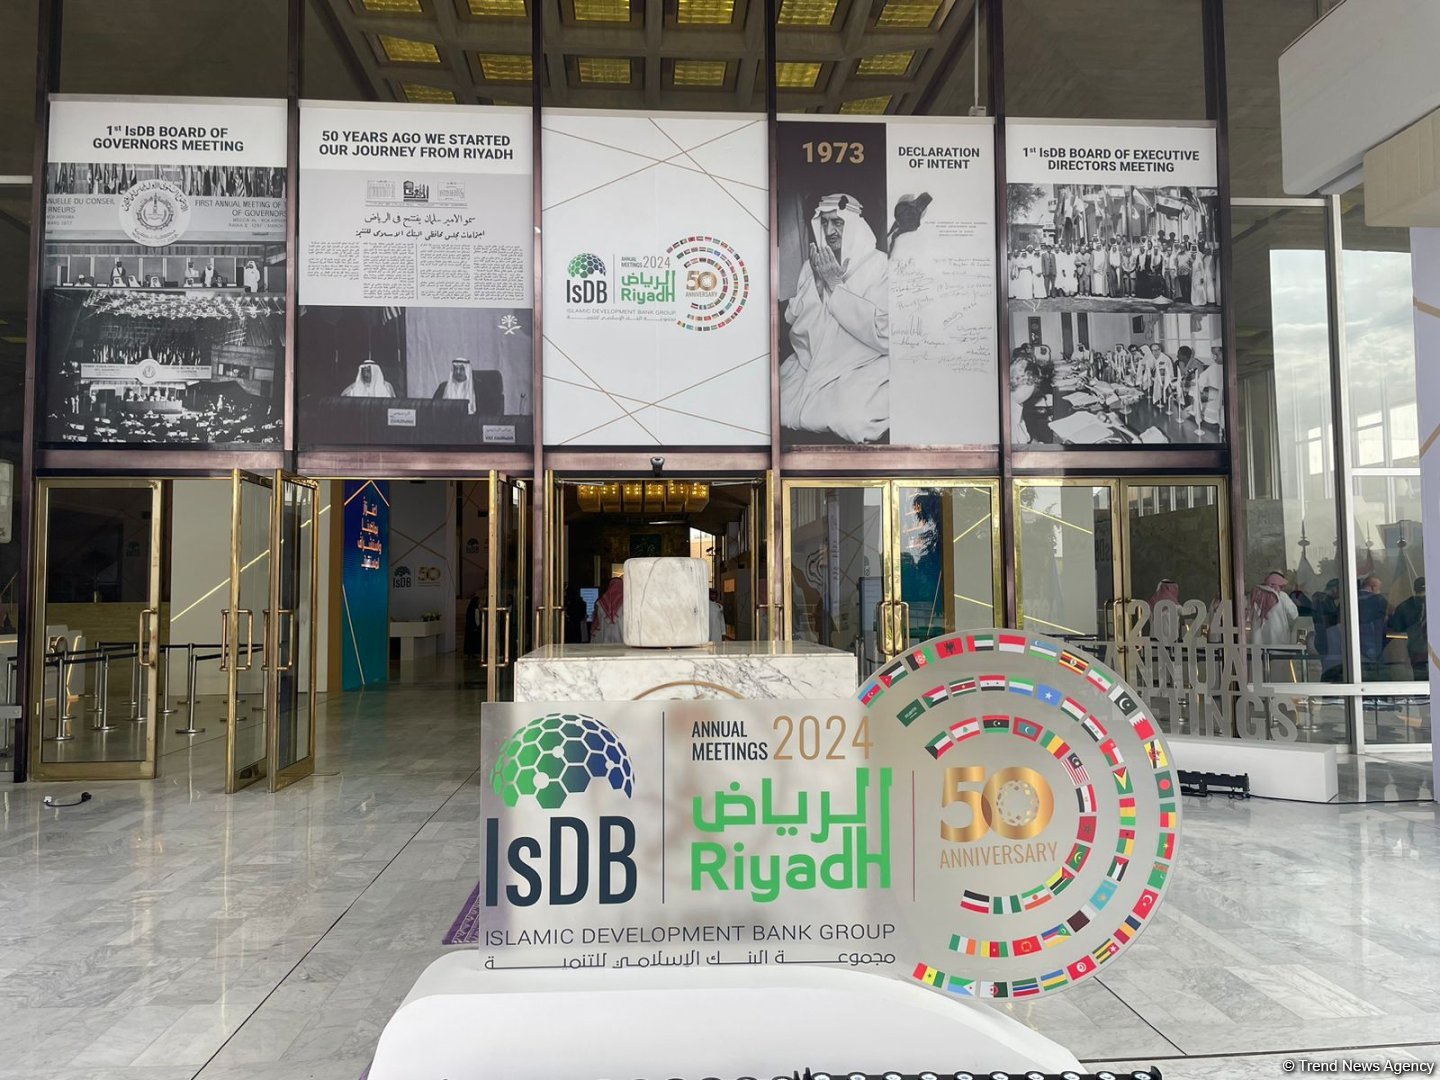 В Эр-Рияде проходят ежегодные совещания и золотой юбилей Группы Исламского банка развития (ФОТО)